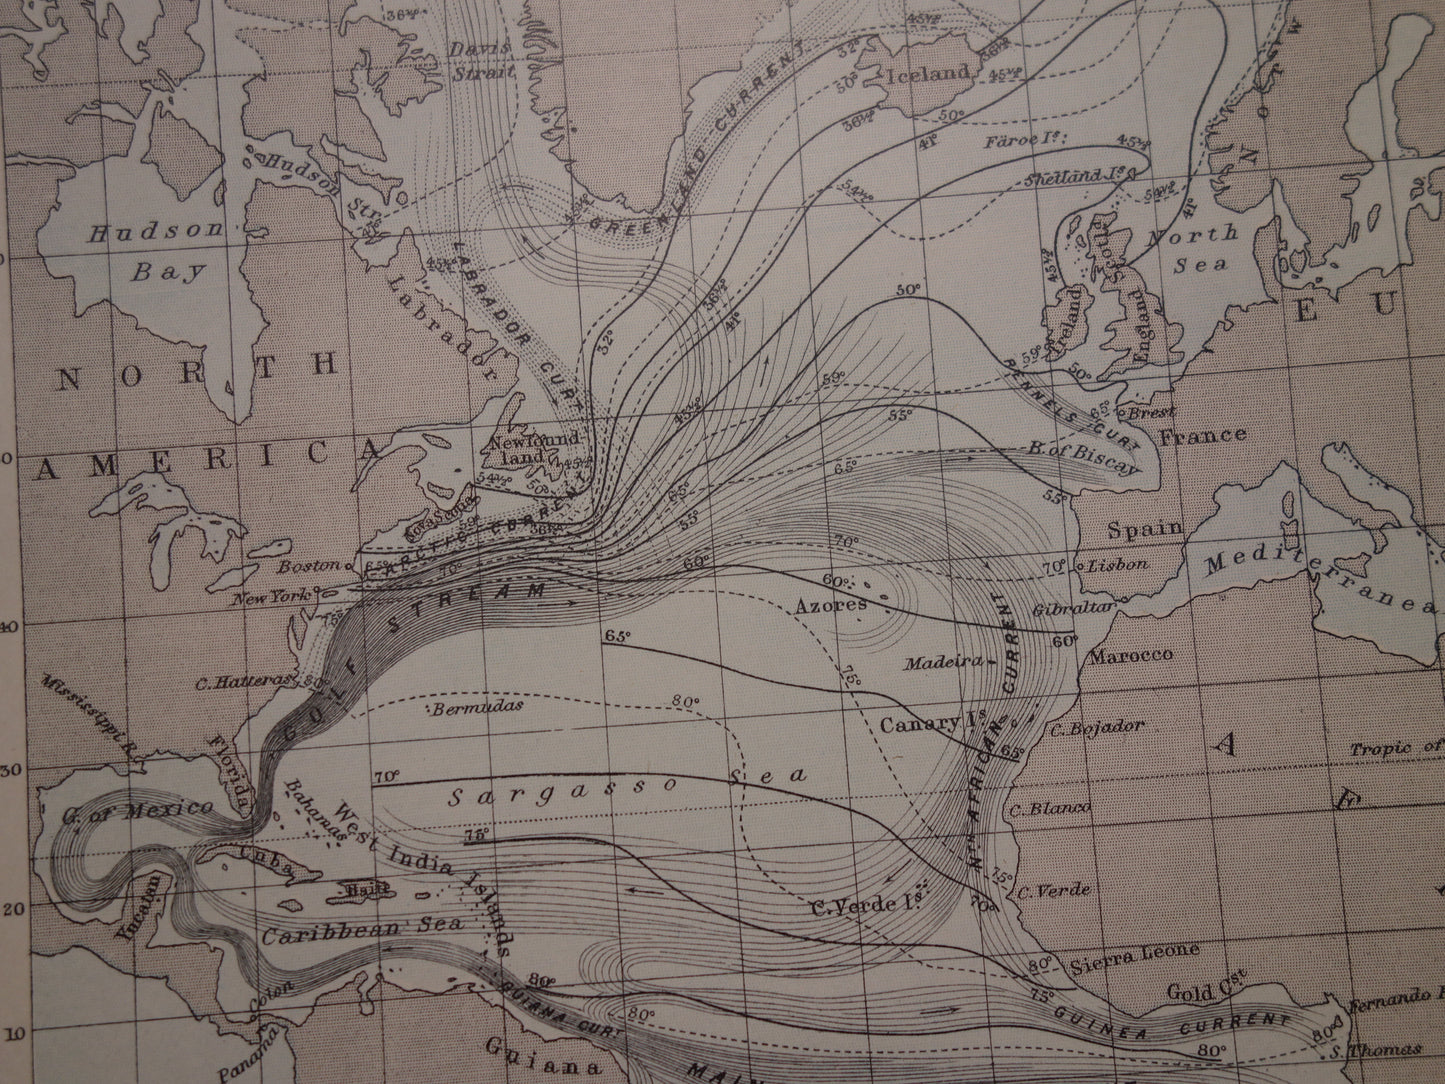 Oude kaart van de Atlantische Oceaan Originele 140+ jaar oude antieke Engelse landkaart